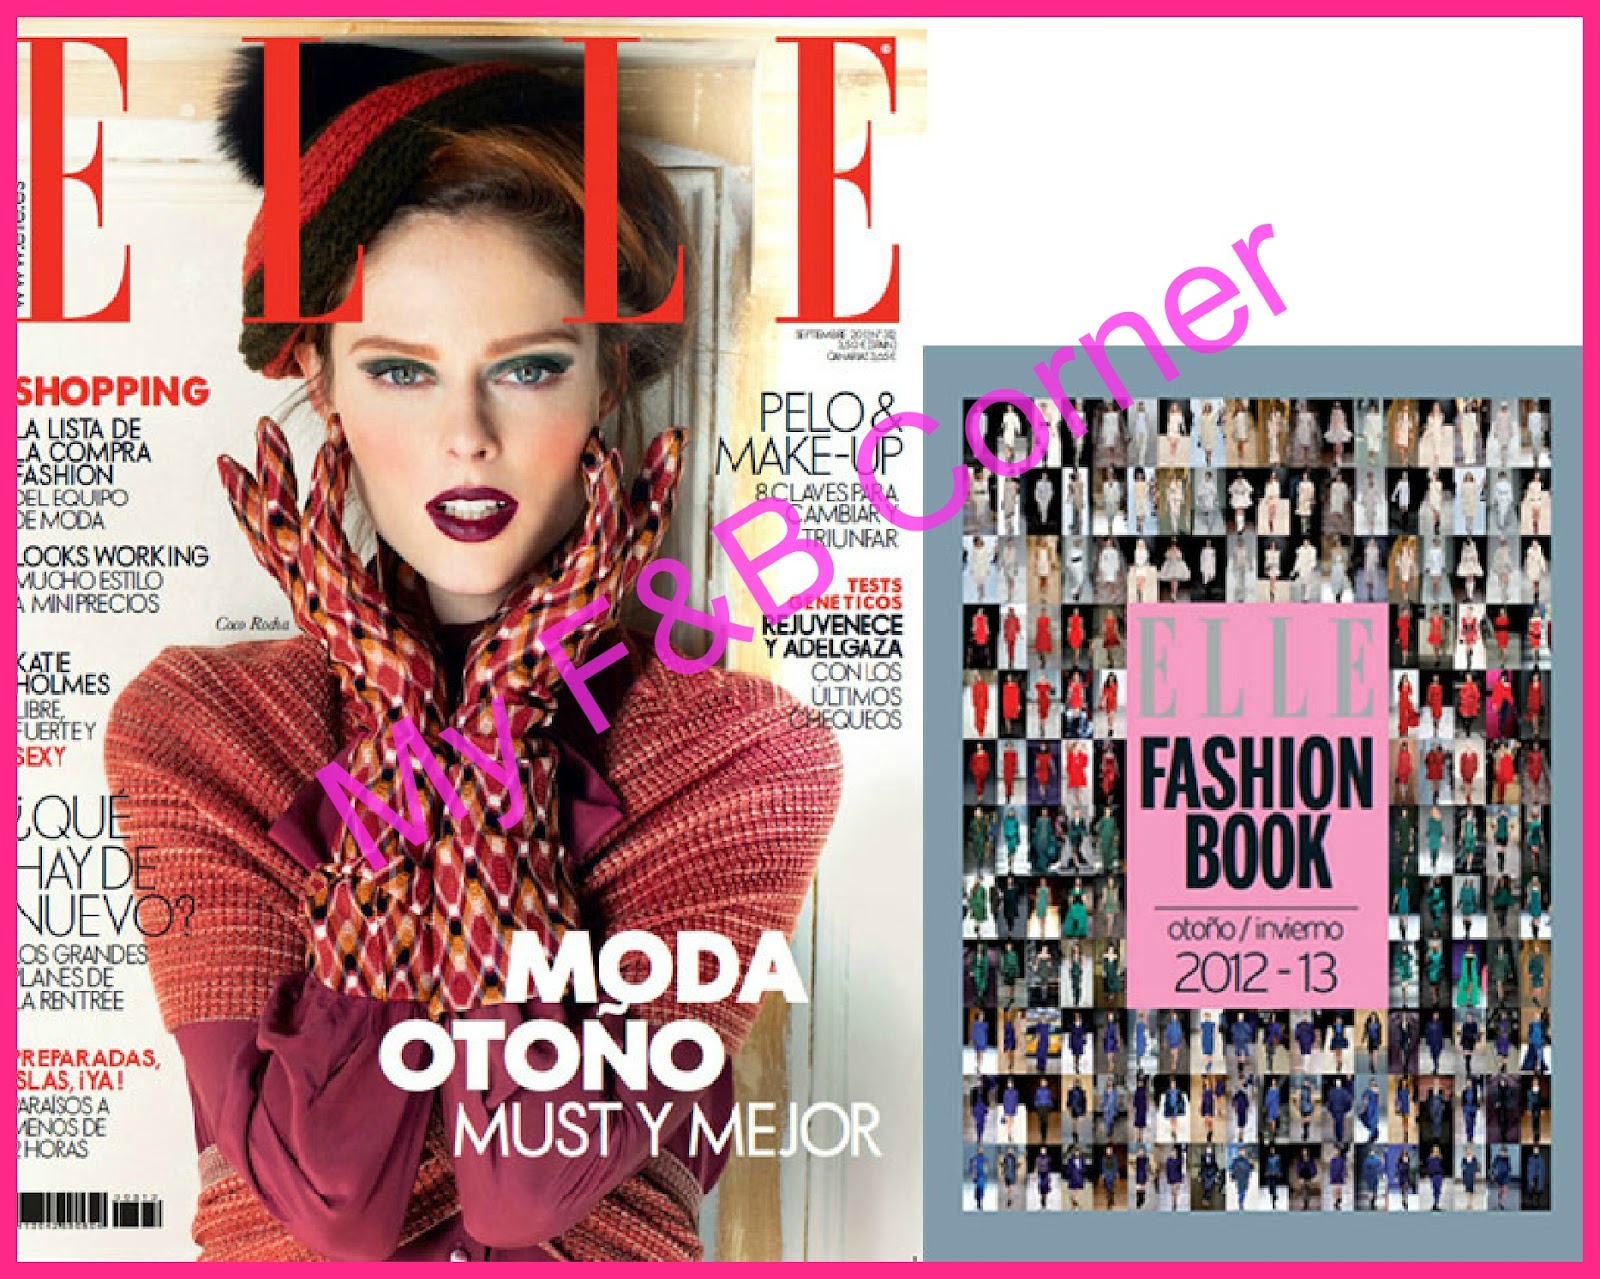 My FB Corner / La moda y la belleza: Regalos revistas moda Septiembre 2012